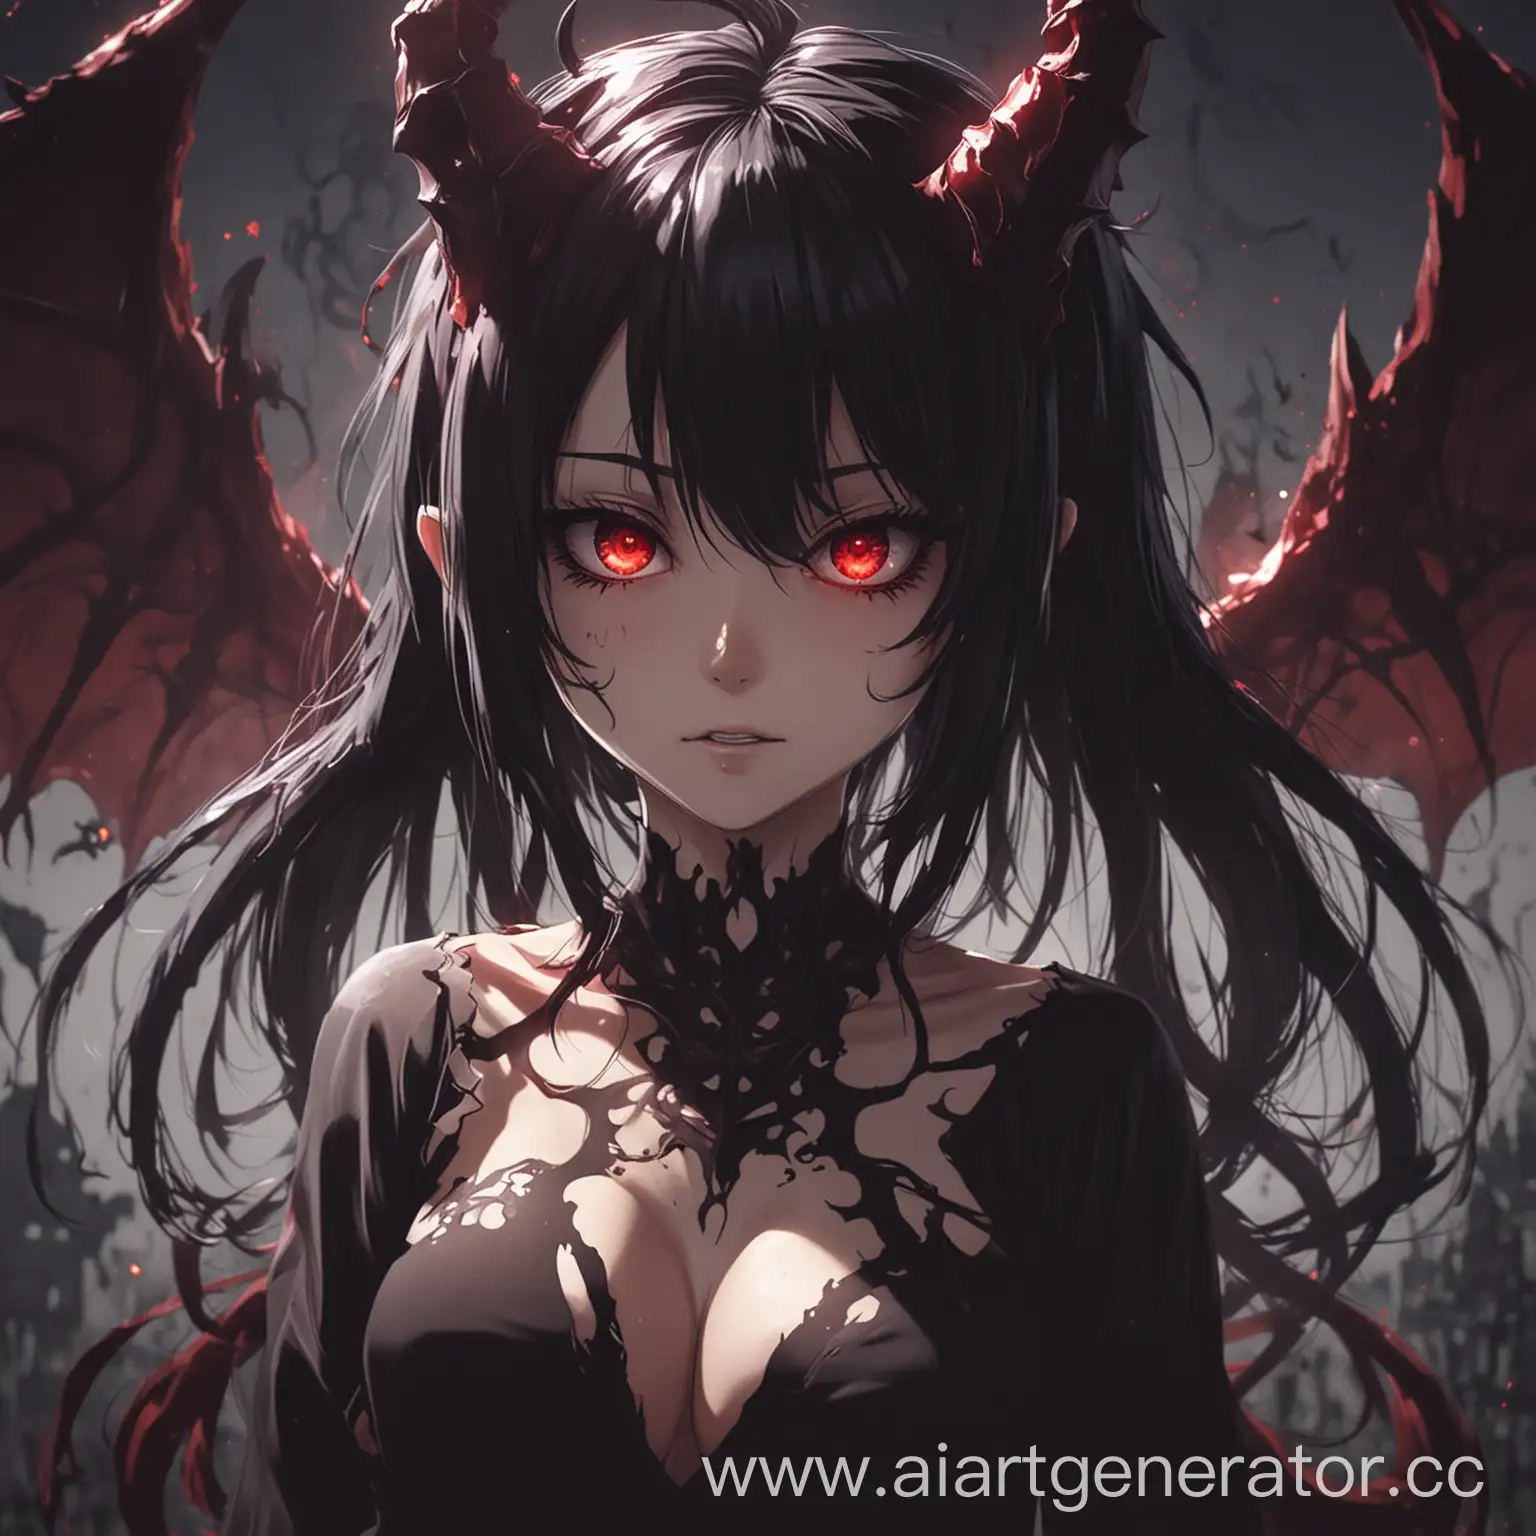 Anime-Demon-Girl-with-Mystical-Aura